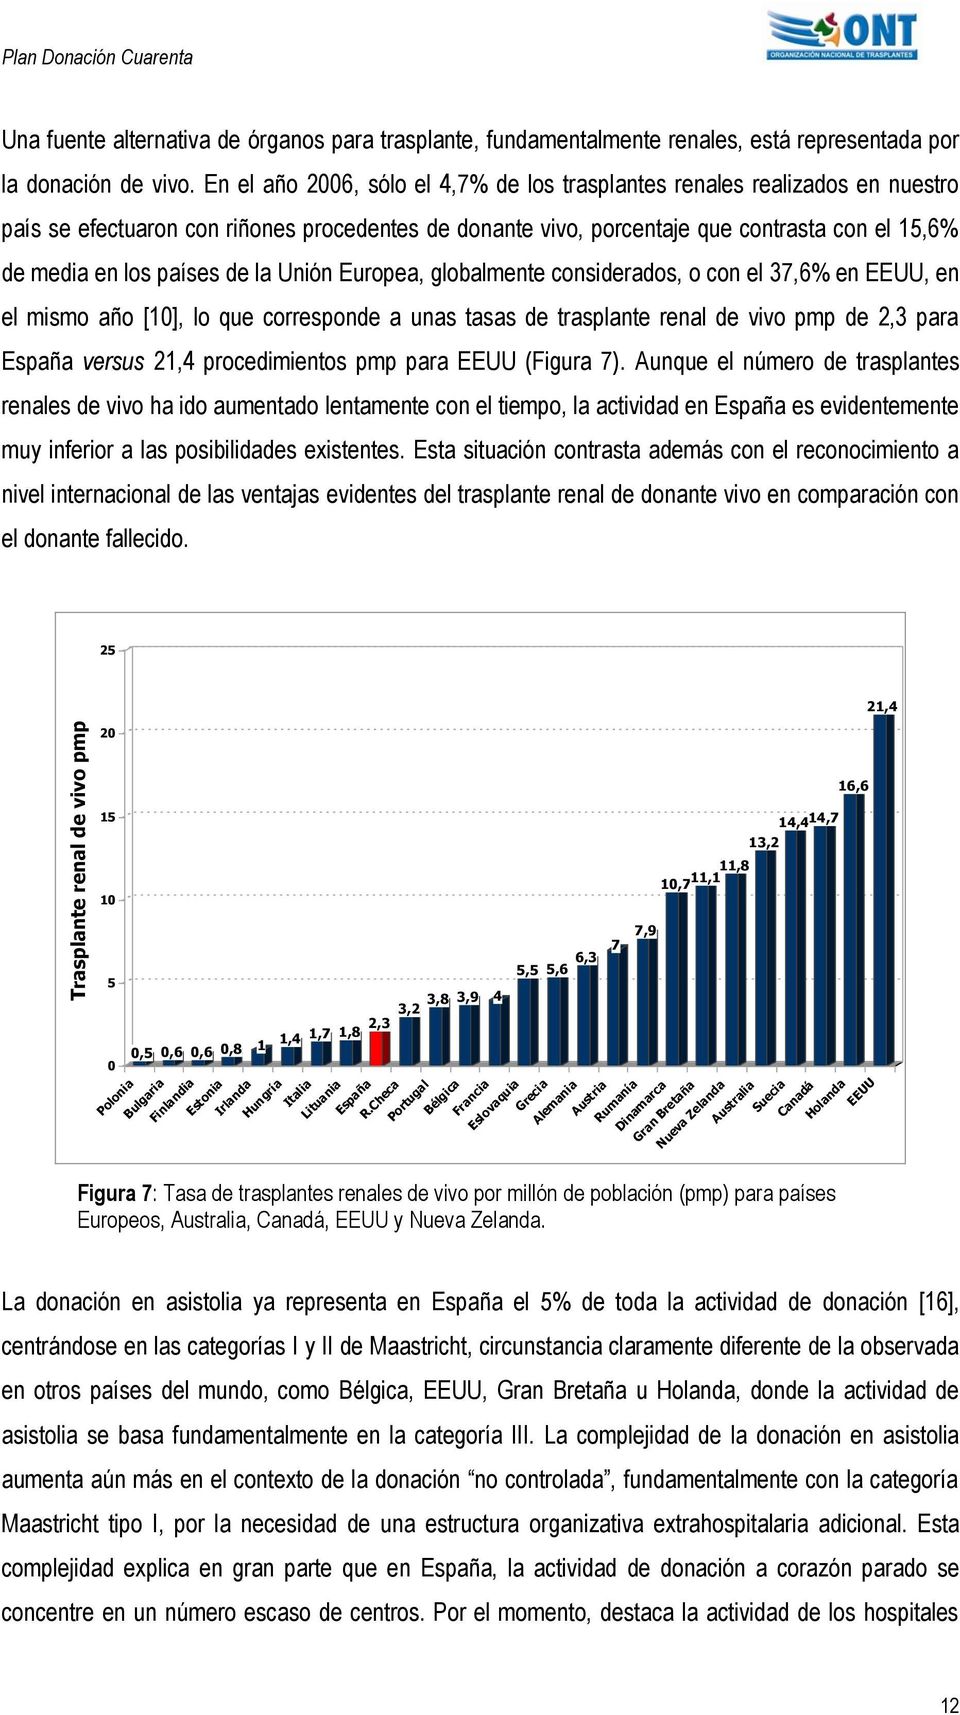 de la Unión Europea, globalmente considerados, o con el 37,6% en EEUU, en el mismo año [10], lo que corresponde a unas tasas de trasplante renal de vivo pmp de 2,3 para España versus 21,4